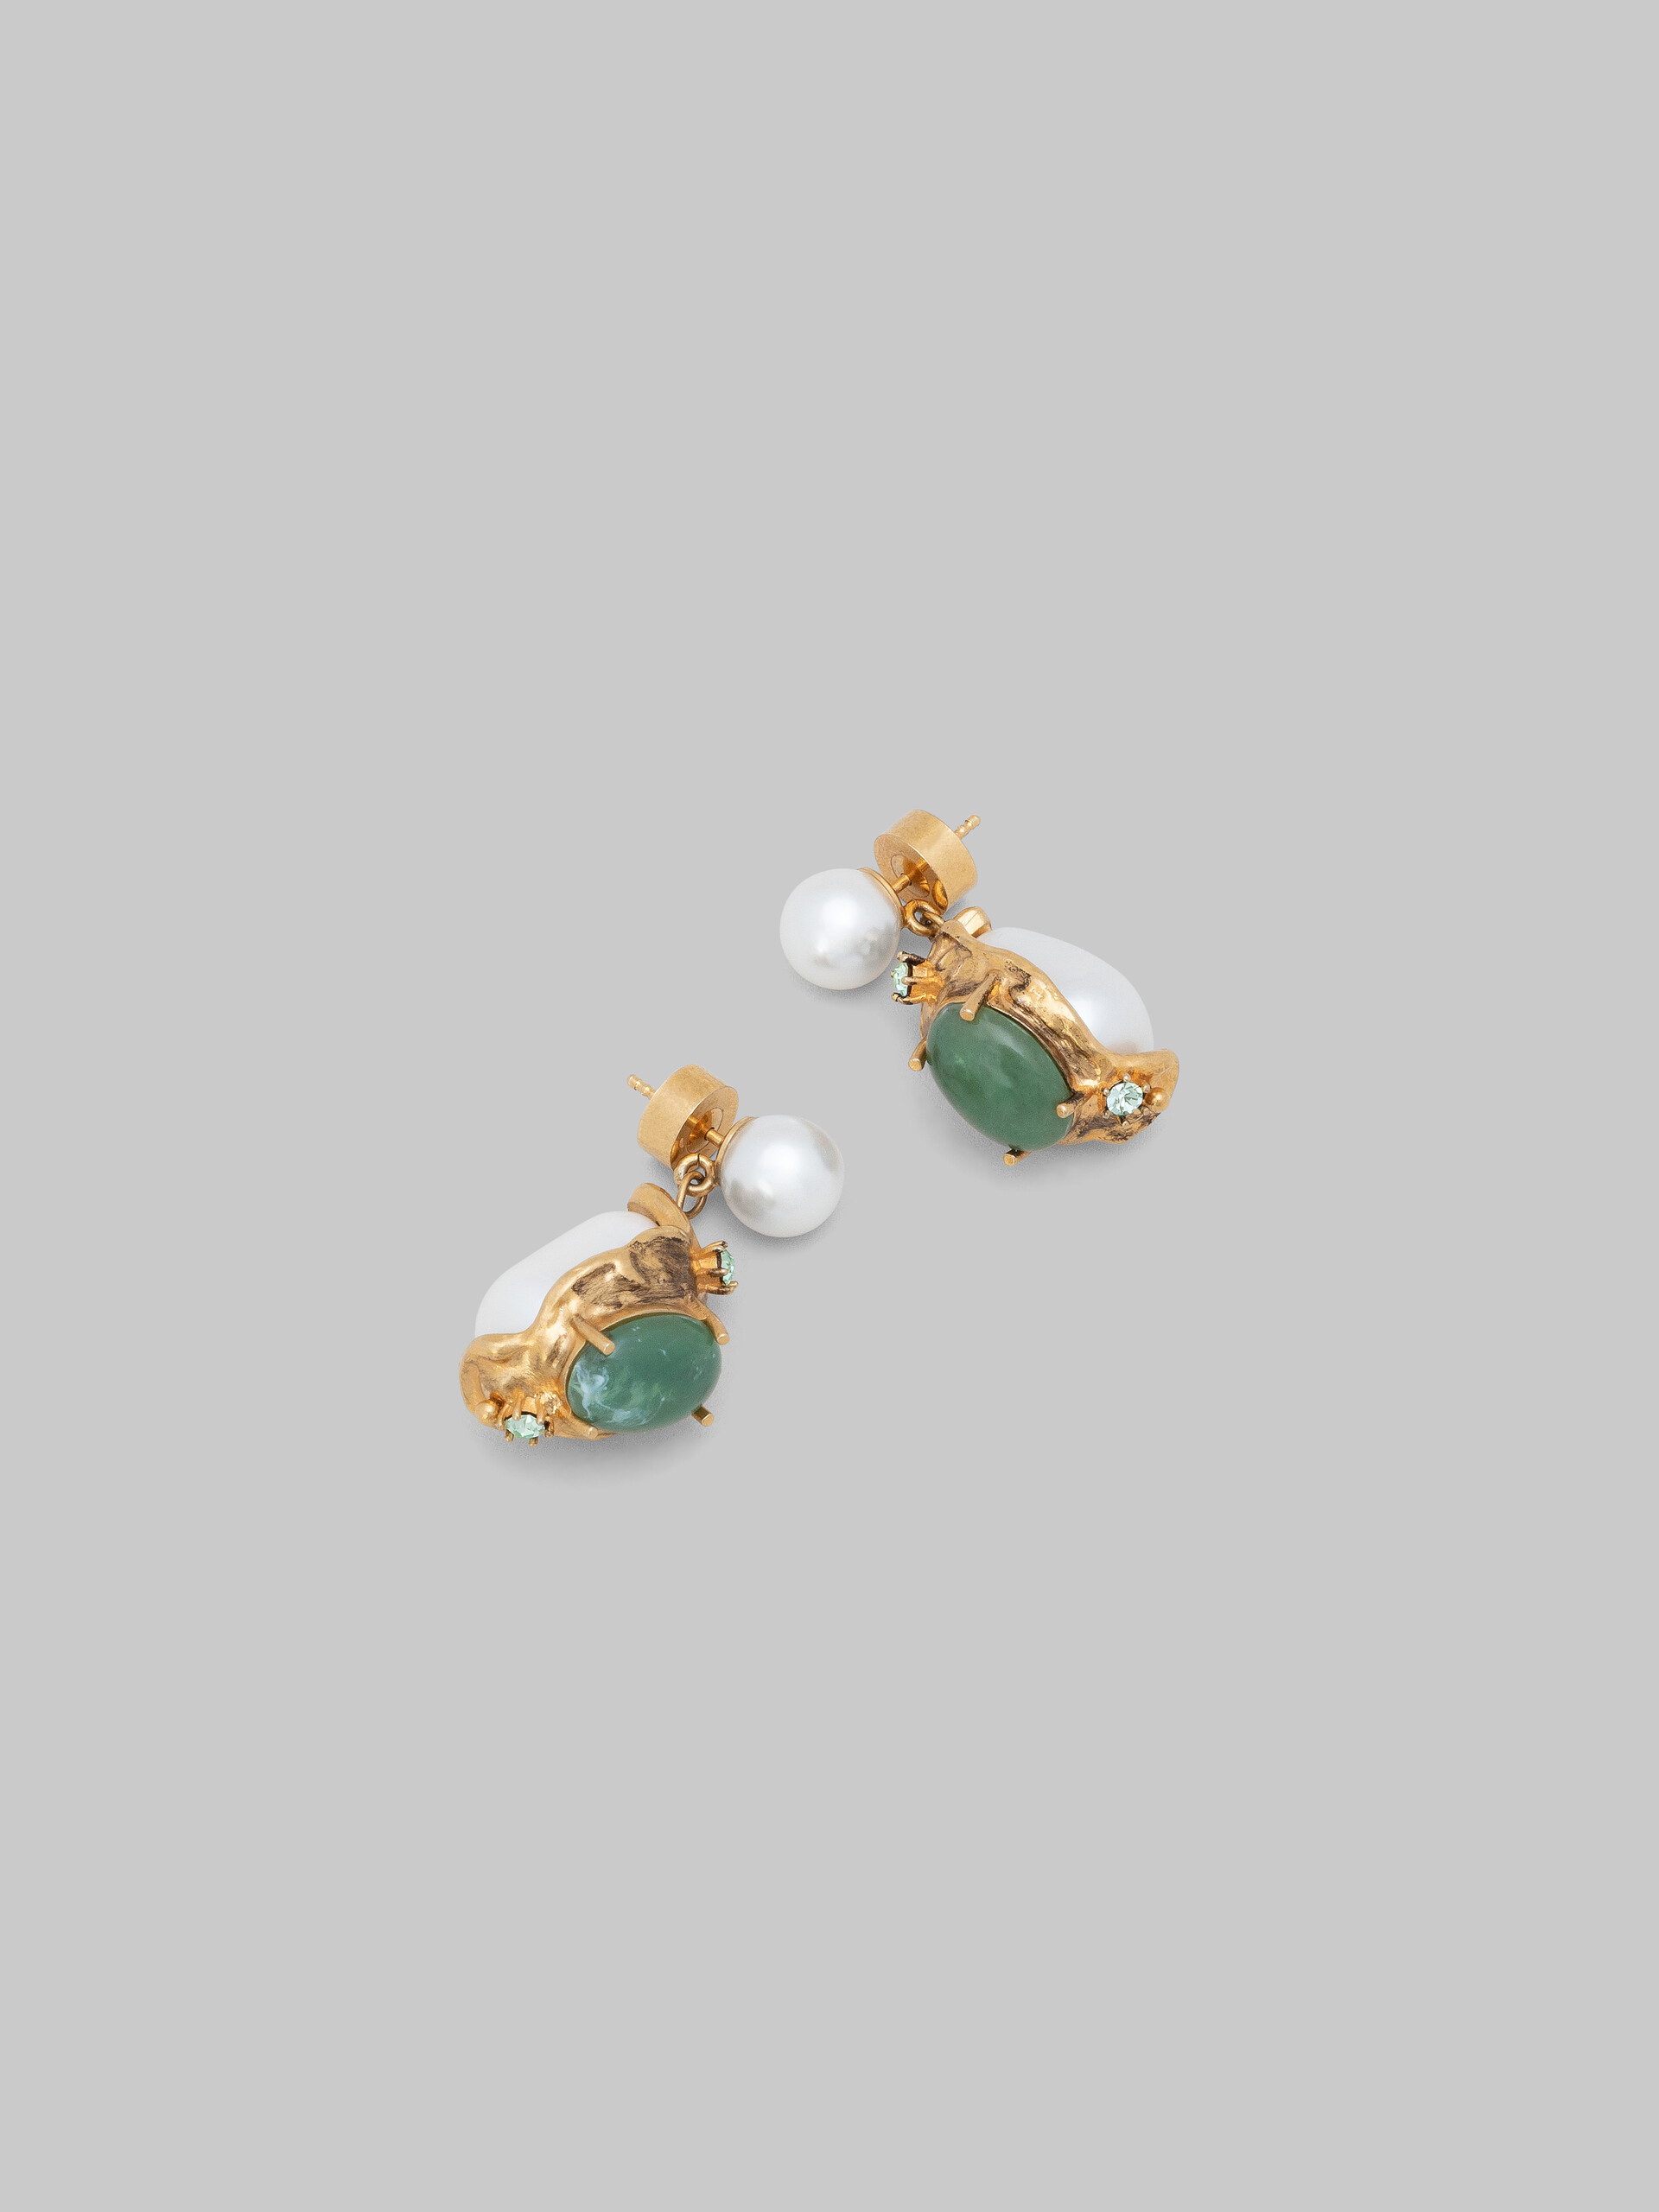 Pearl drop earrings with green gemstones - Earrings - Image 4